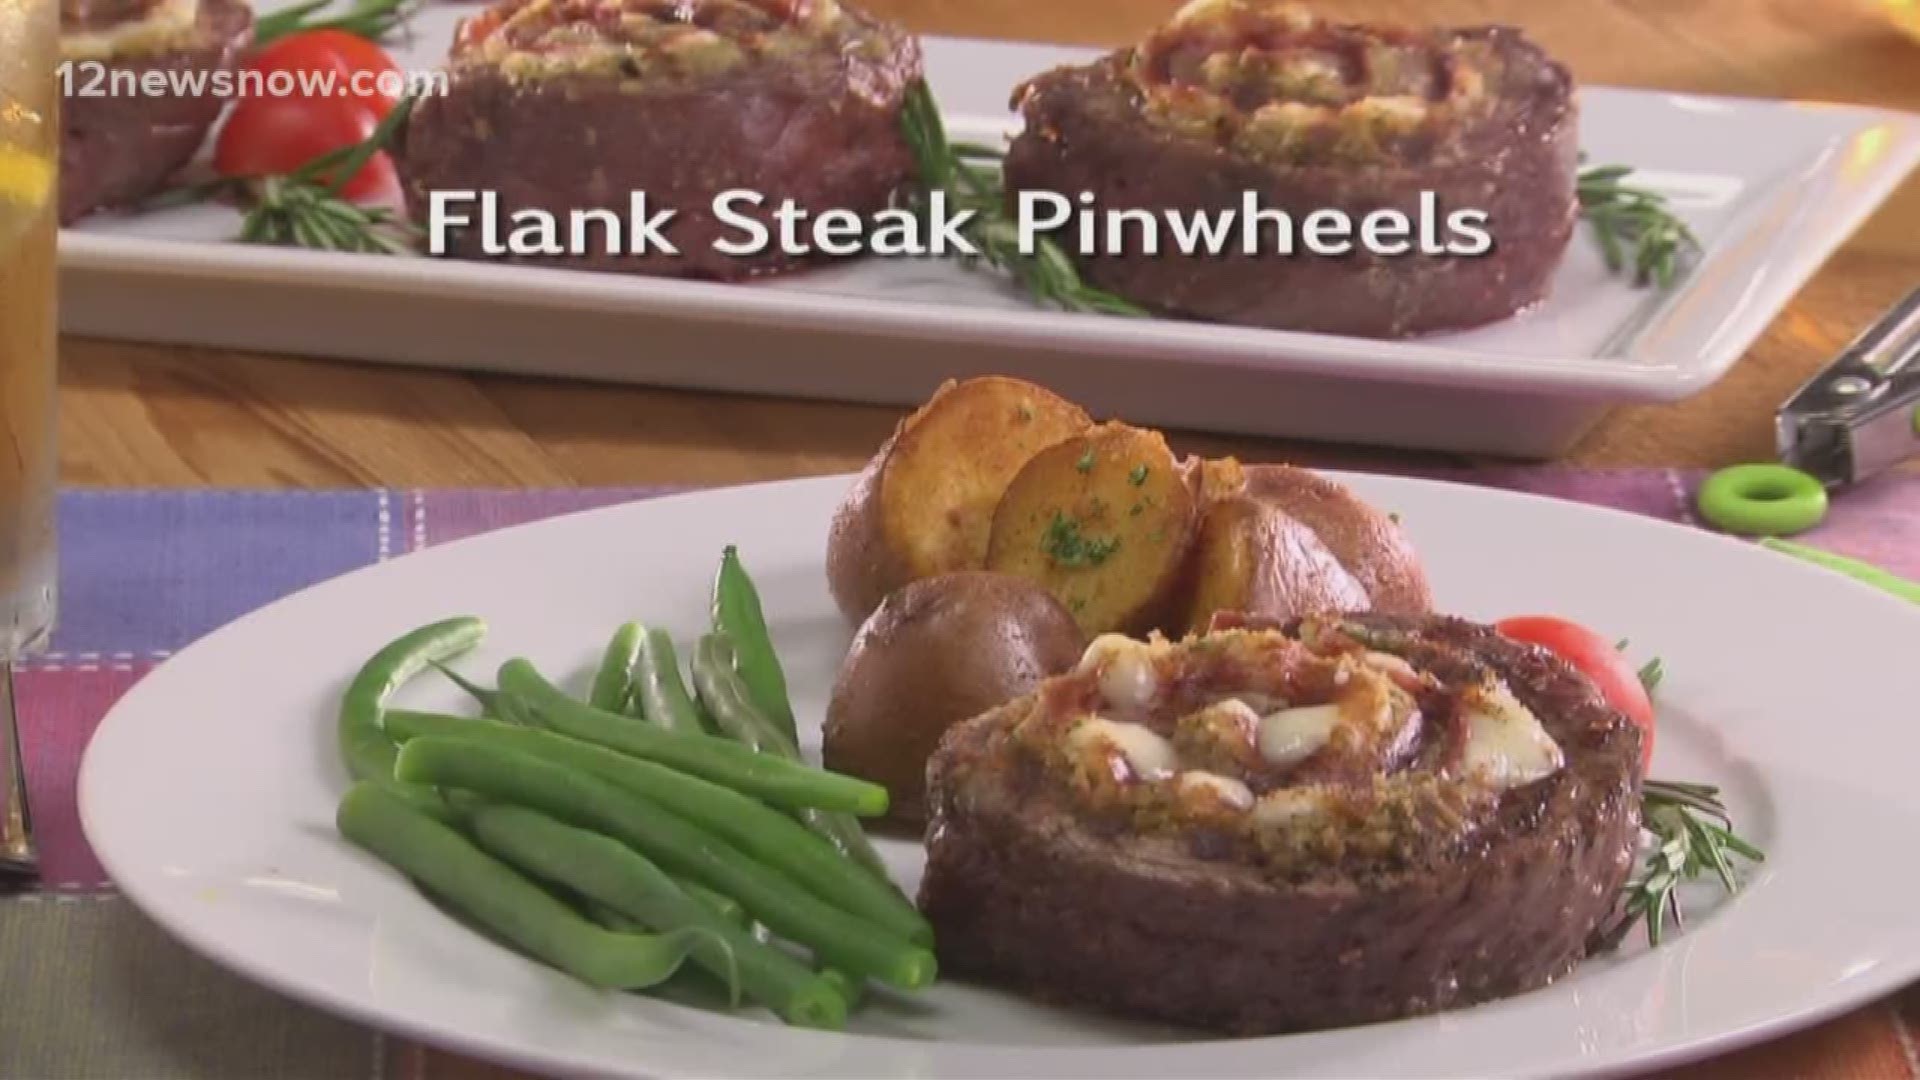 Mr. Food makes Flank Steak Pinwheels